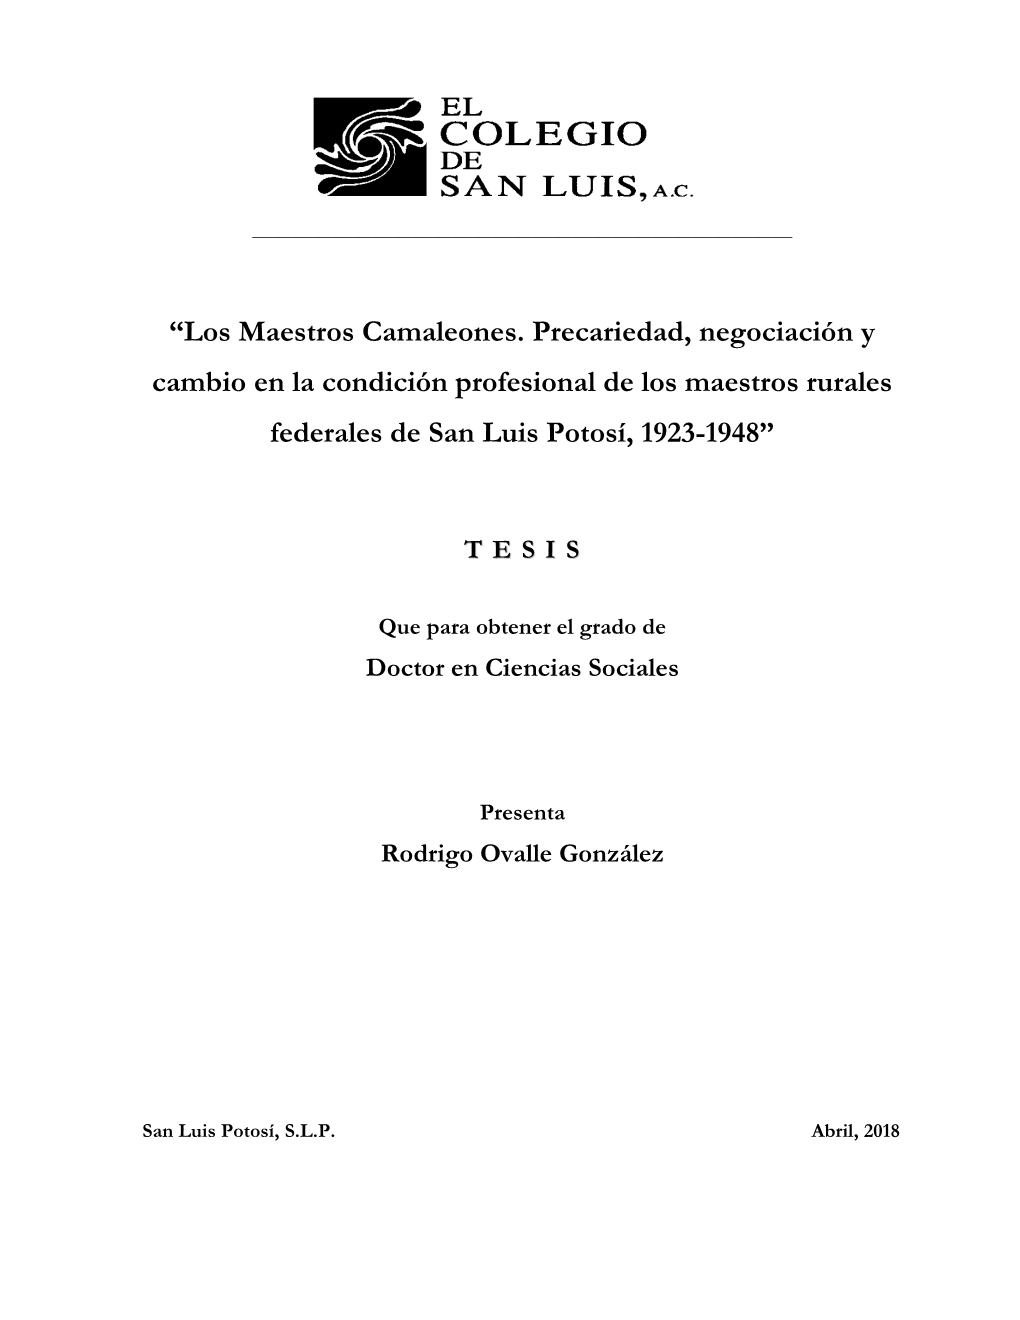 Los Maestros Camaleones. Precariedad, Negociación Y Cambio En La Condición Profesional De Los Maestros Rurales Federales De San Luis Potosí, 1923-1948”